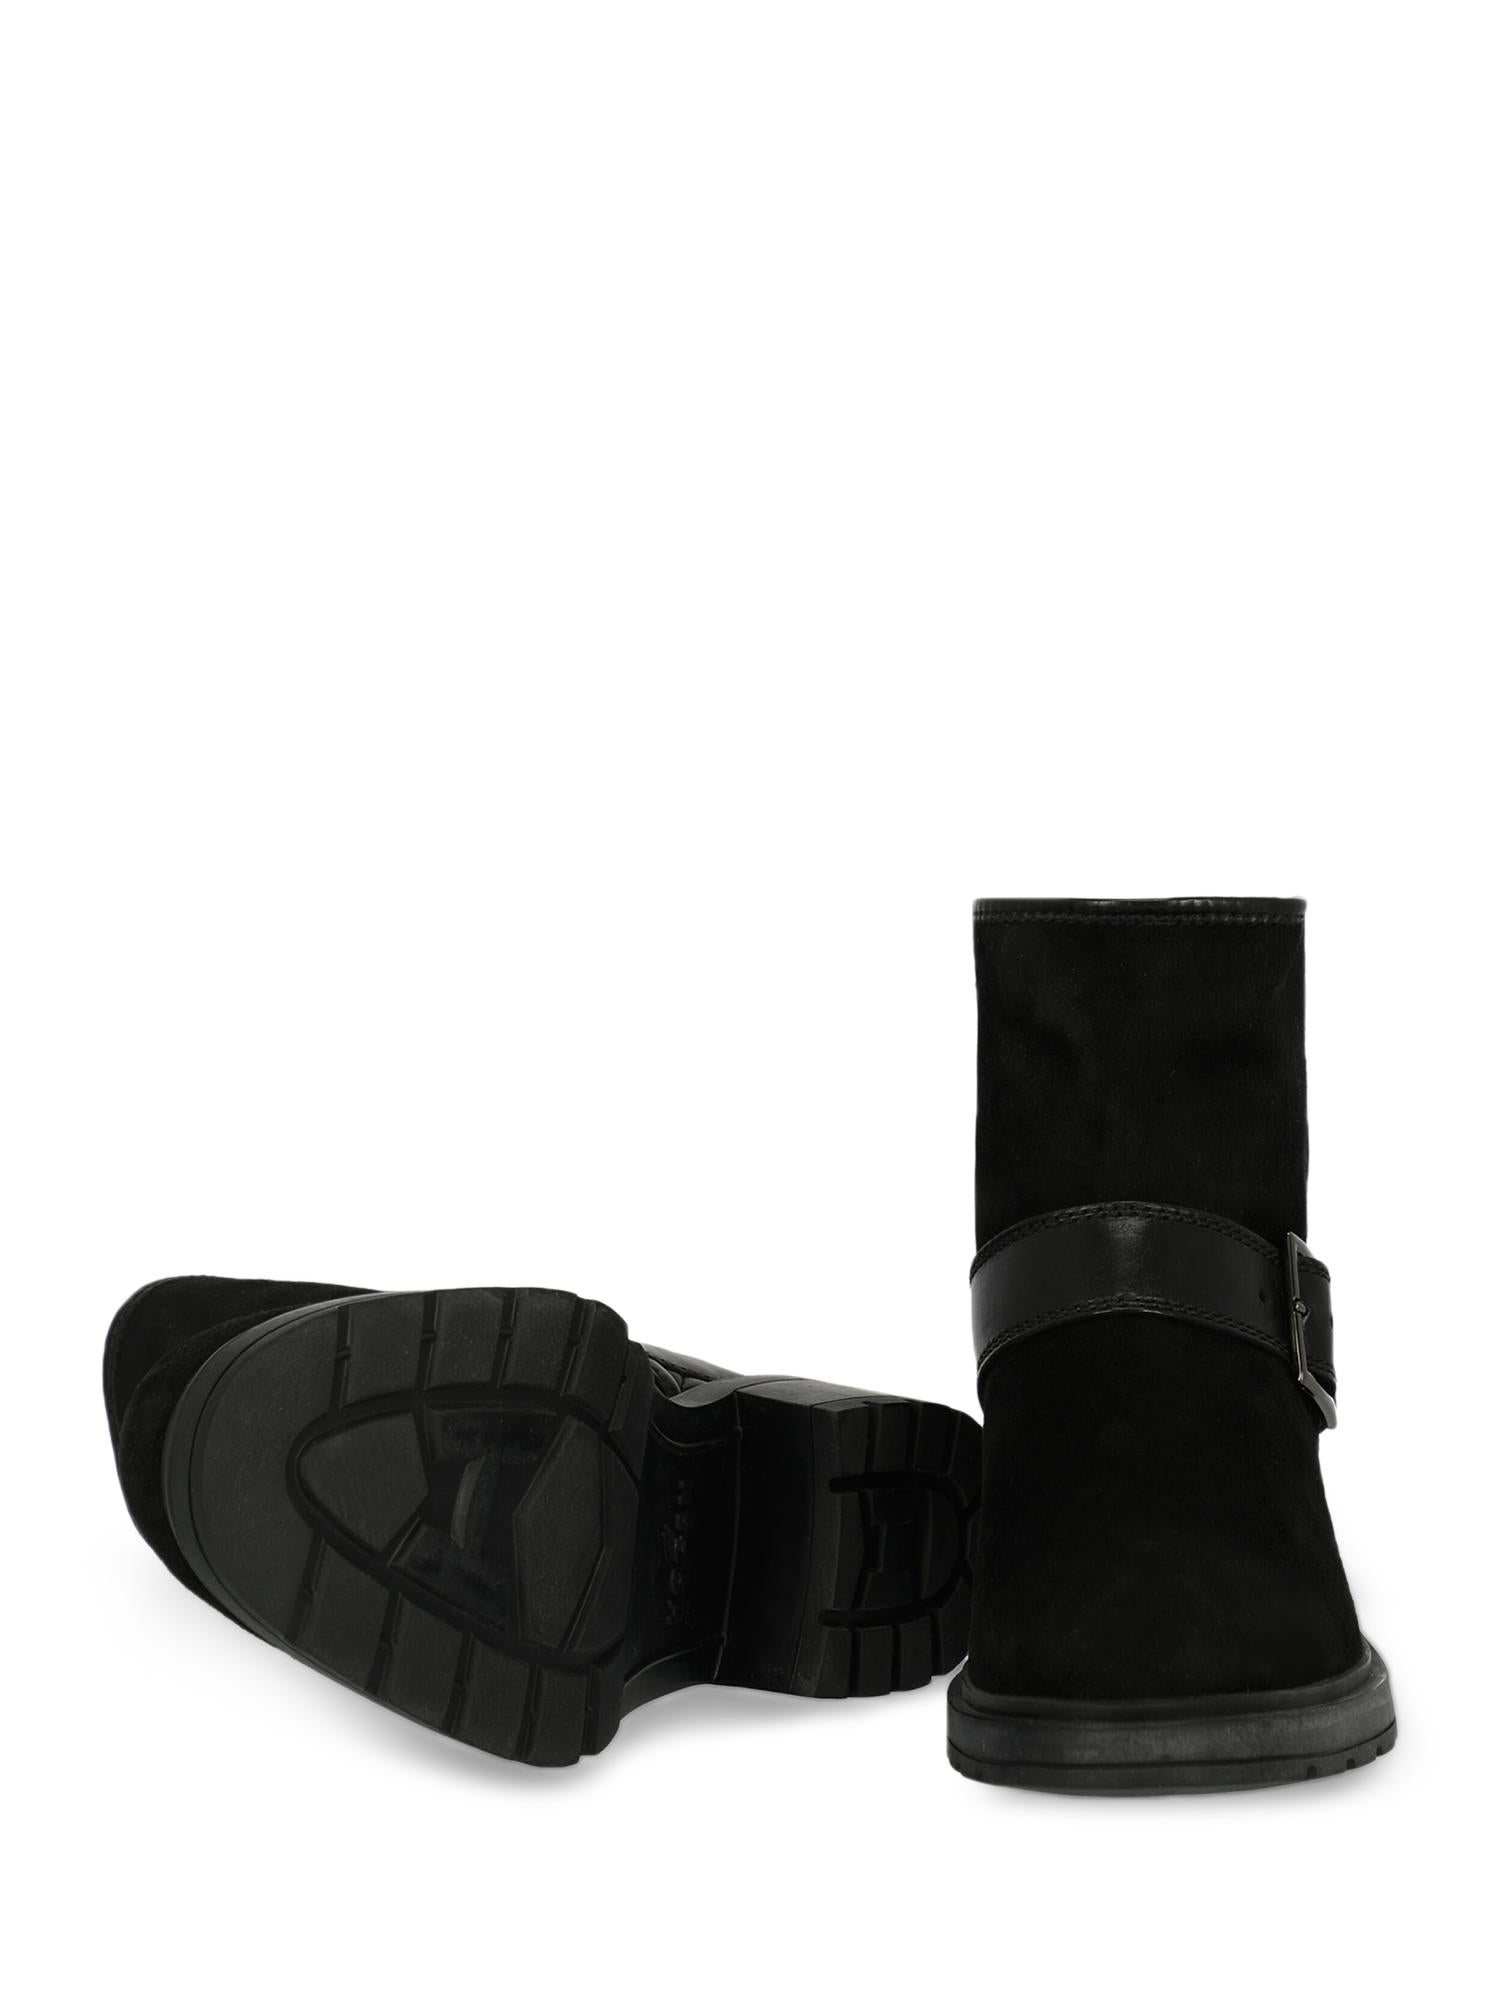 Women's Hogan Woman Ankle boots Black EU 35.5 For Sale